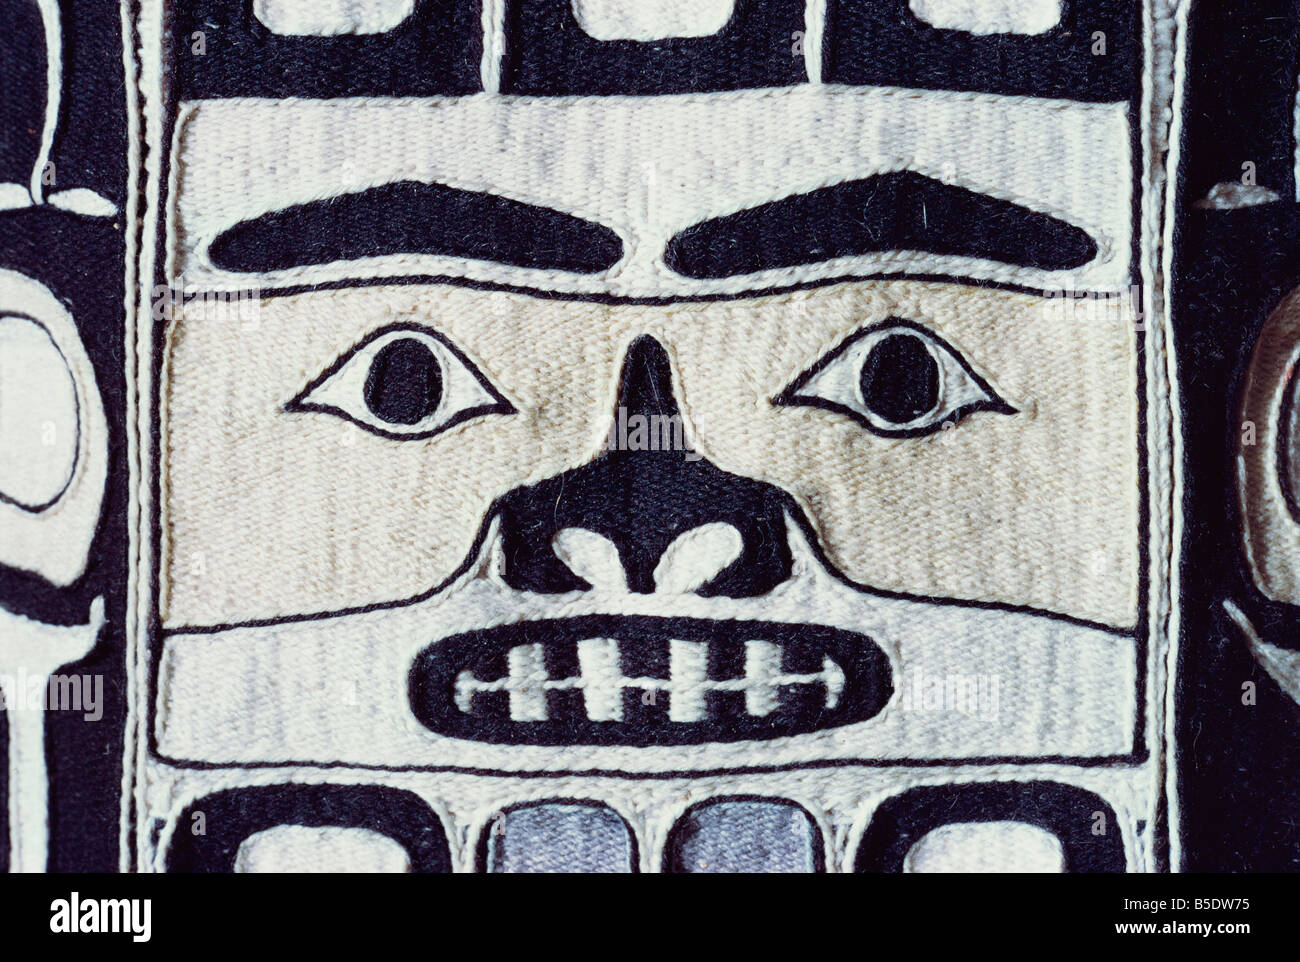 Dettaglio della maglietta Chilkat, Tlingit da nord-ovest pacifico, esposti nel museo di Portland, Portland, Oregon, Stati Uniti d'America Foto Stock